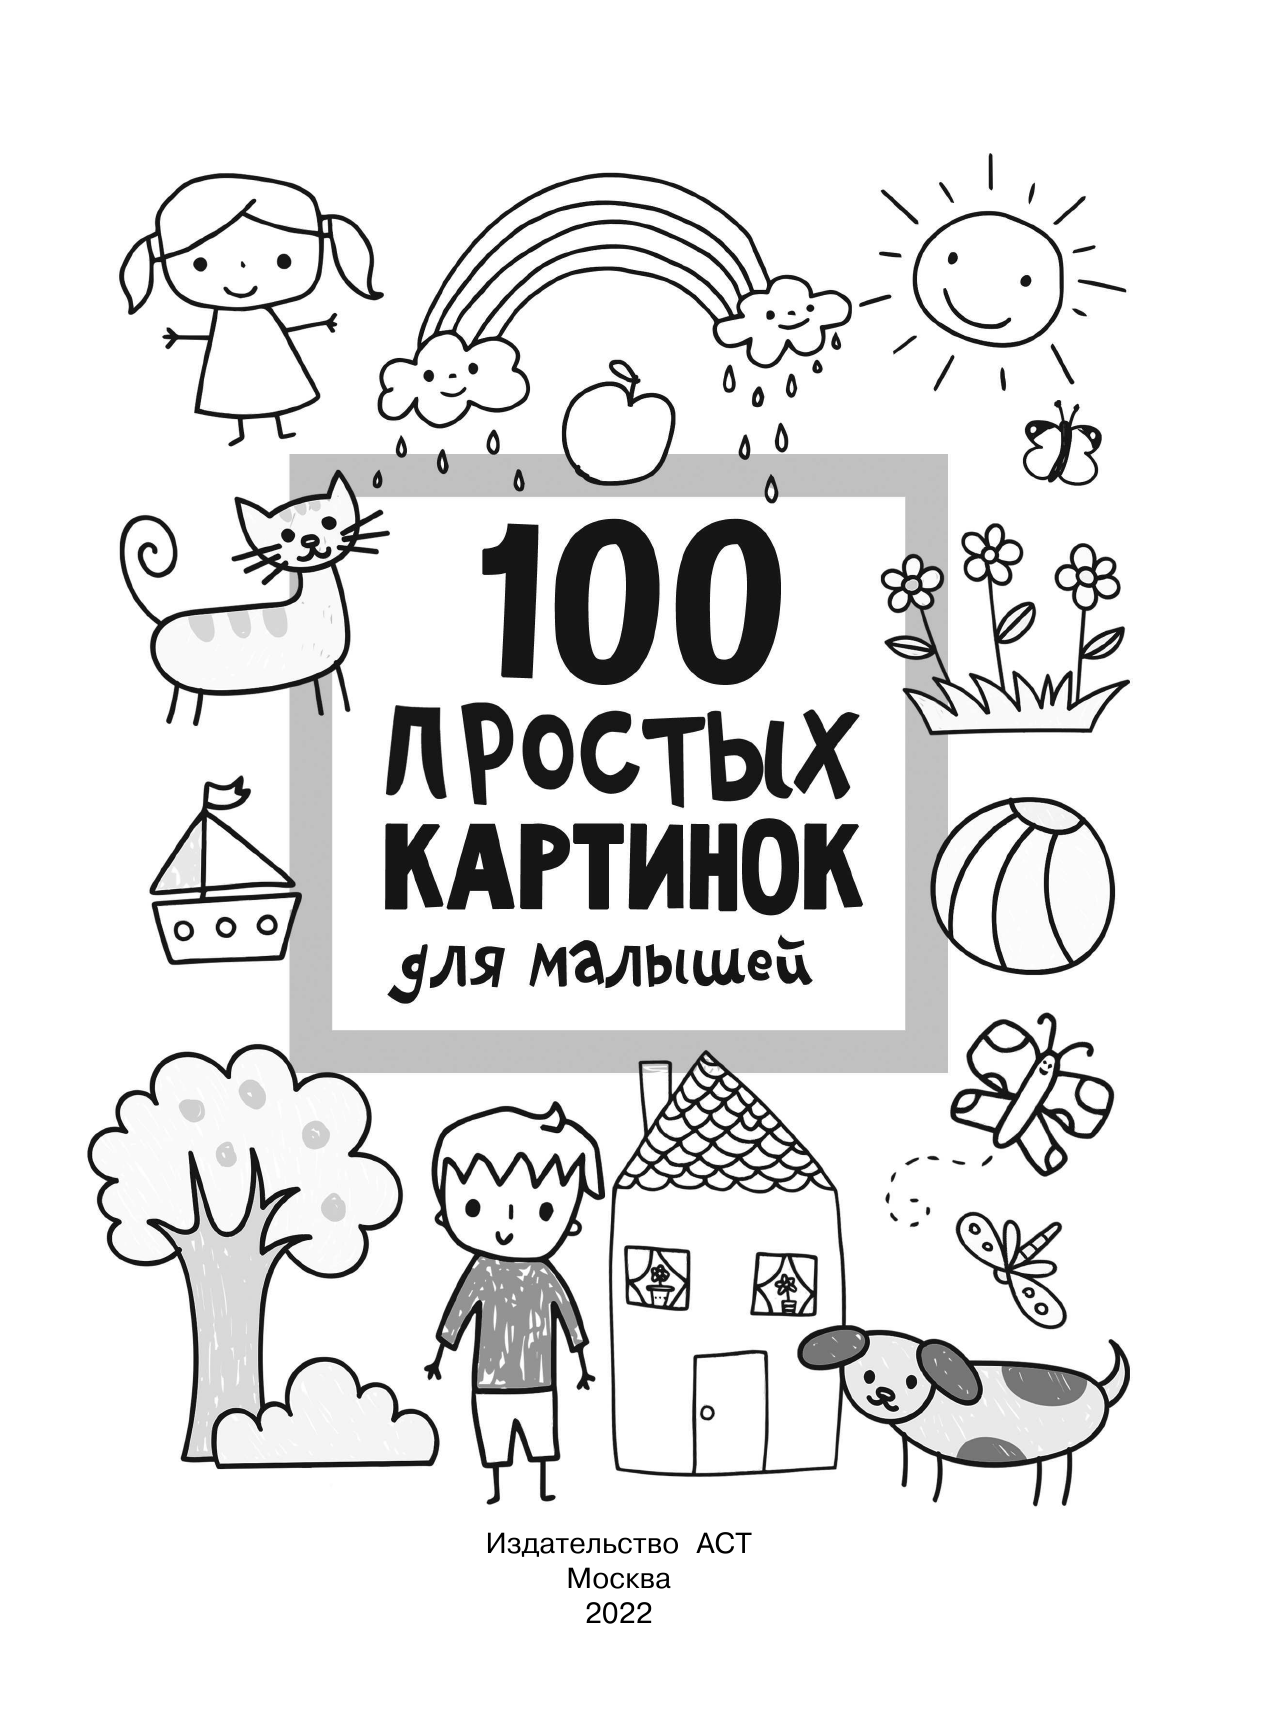 Дмитриева Валентина Геннадьевна 100 простых картинок для малышей - страница 2